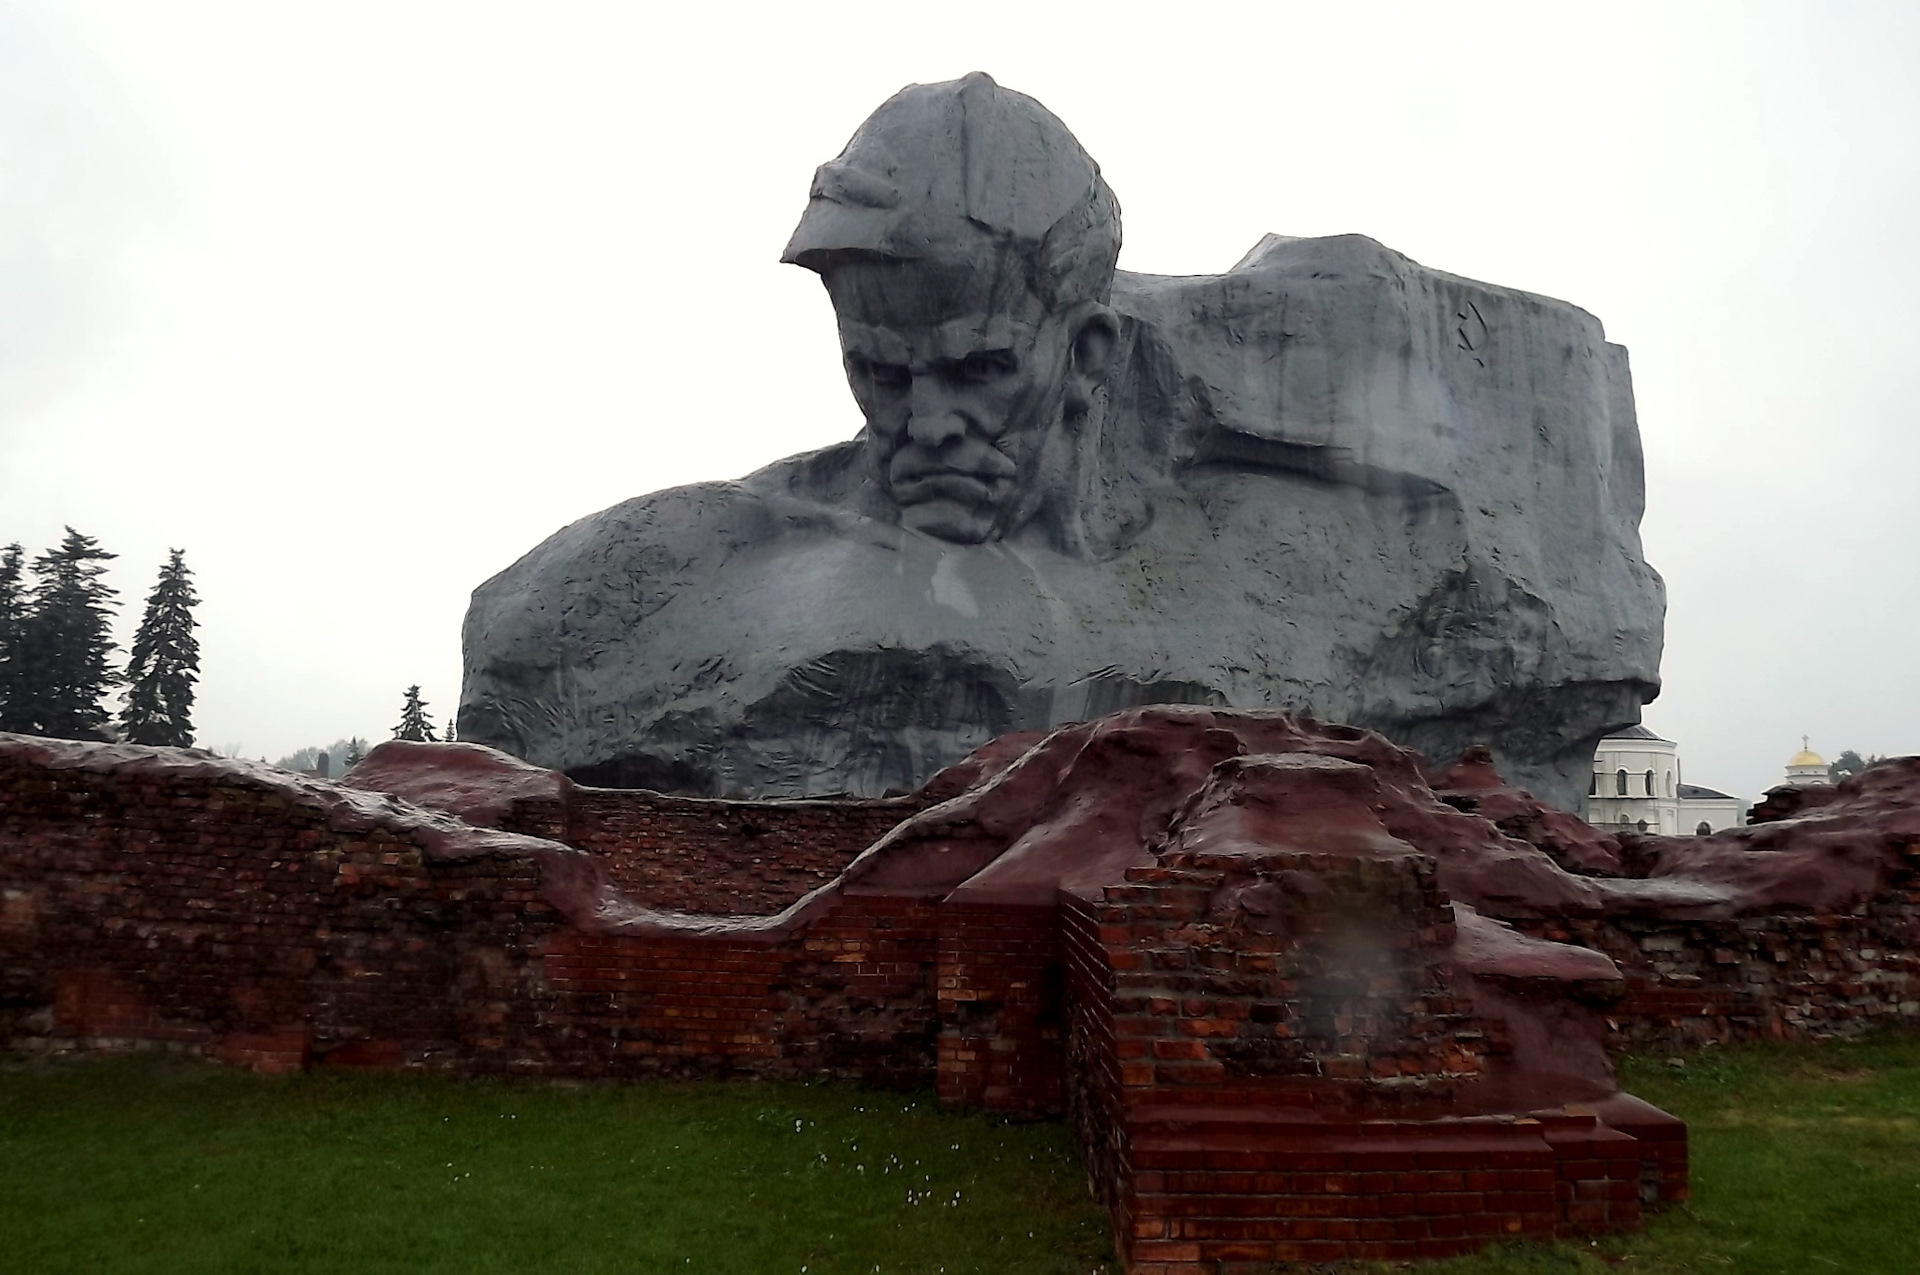 Памятник защитникам Брестской крепости